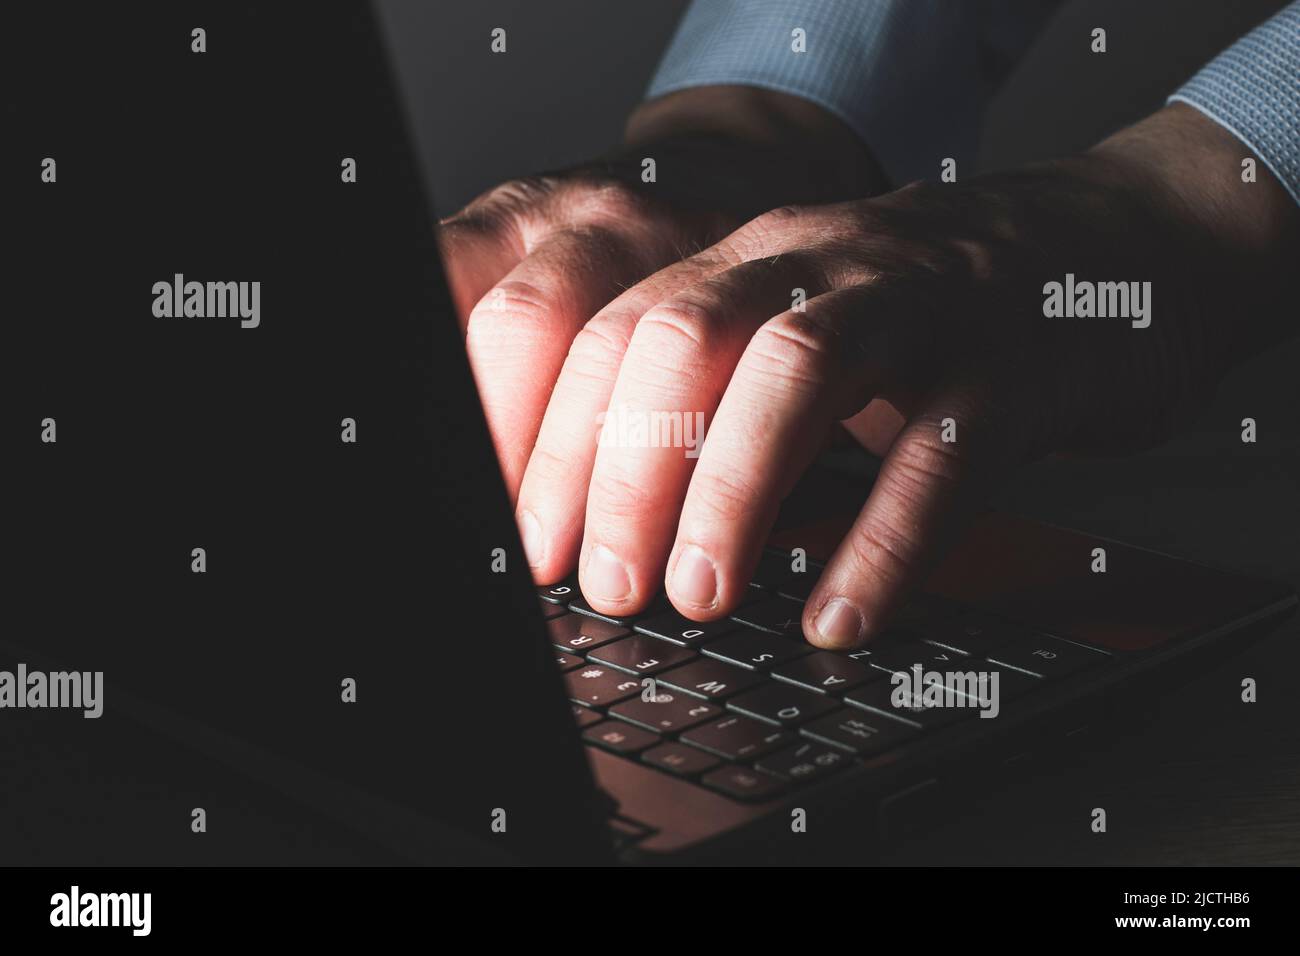 Le mani di un uomo caucasico irriconoscibile in una maglietta blu che digita su una tastiera di un computer portatile. La scena è scura e le mani sono illuminate dalla luce Foto Stock